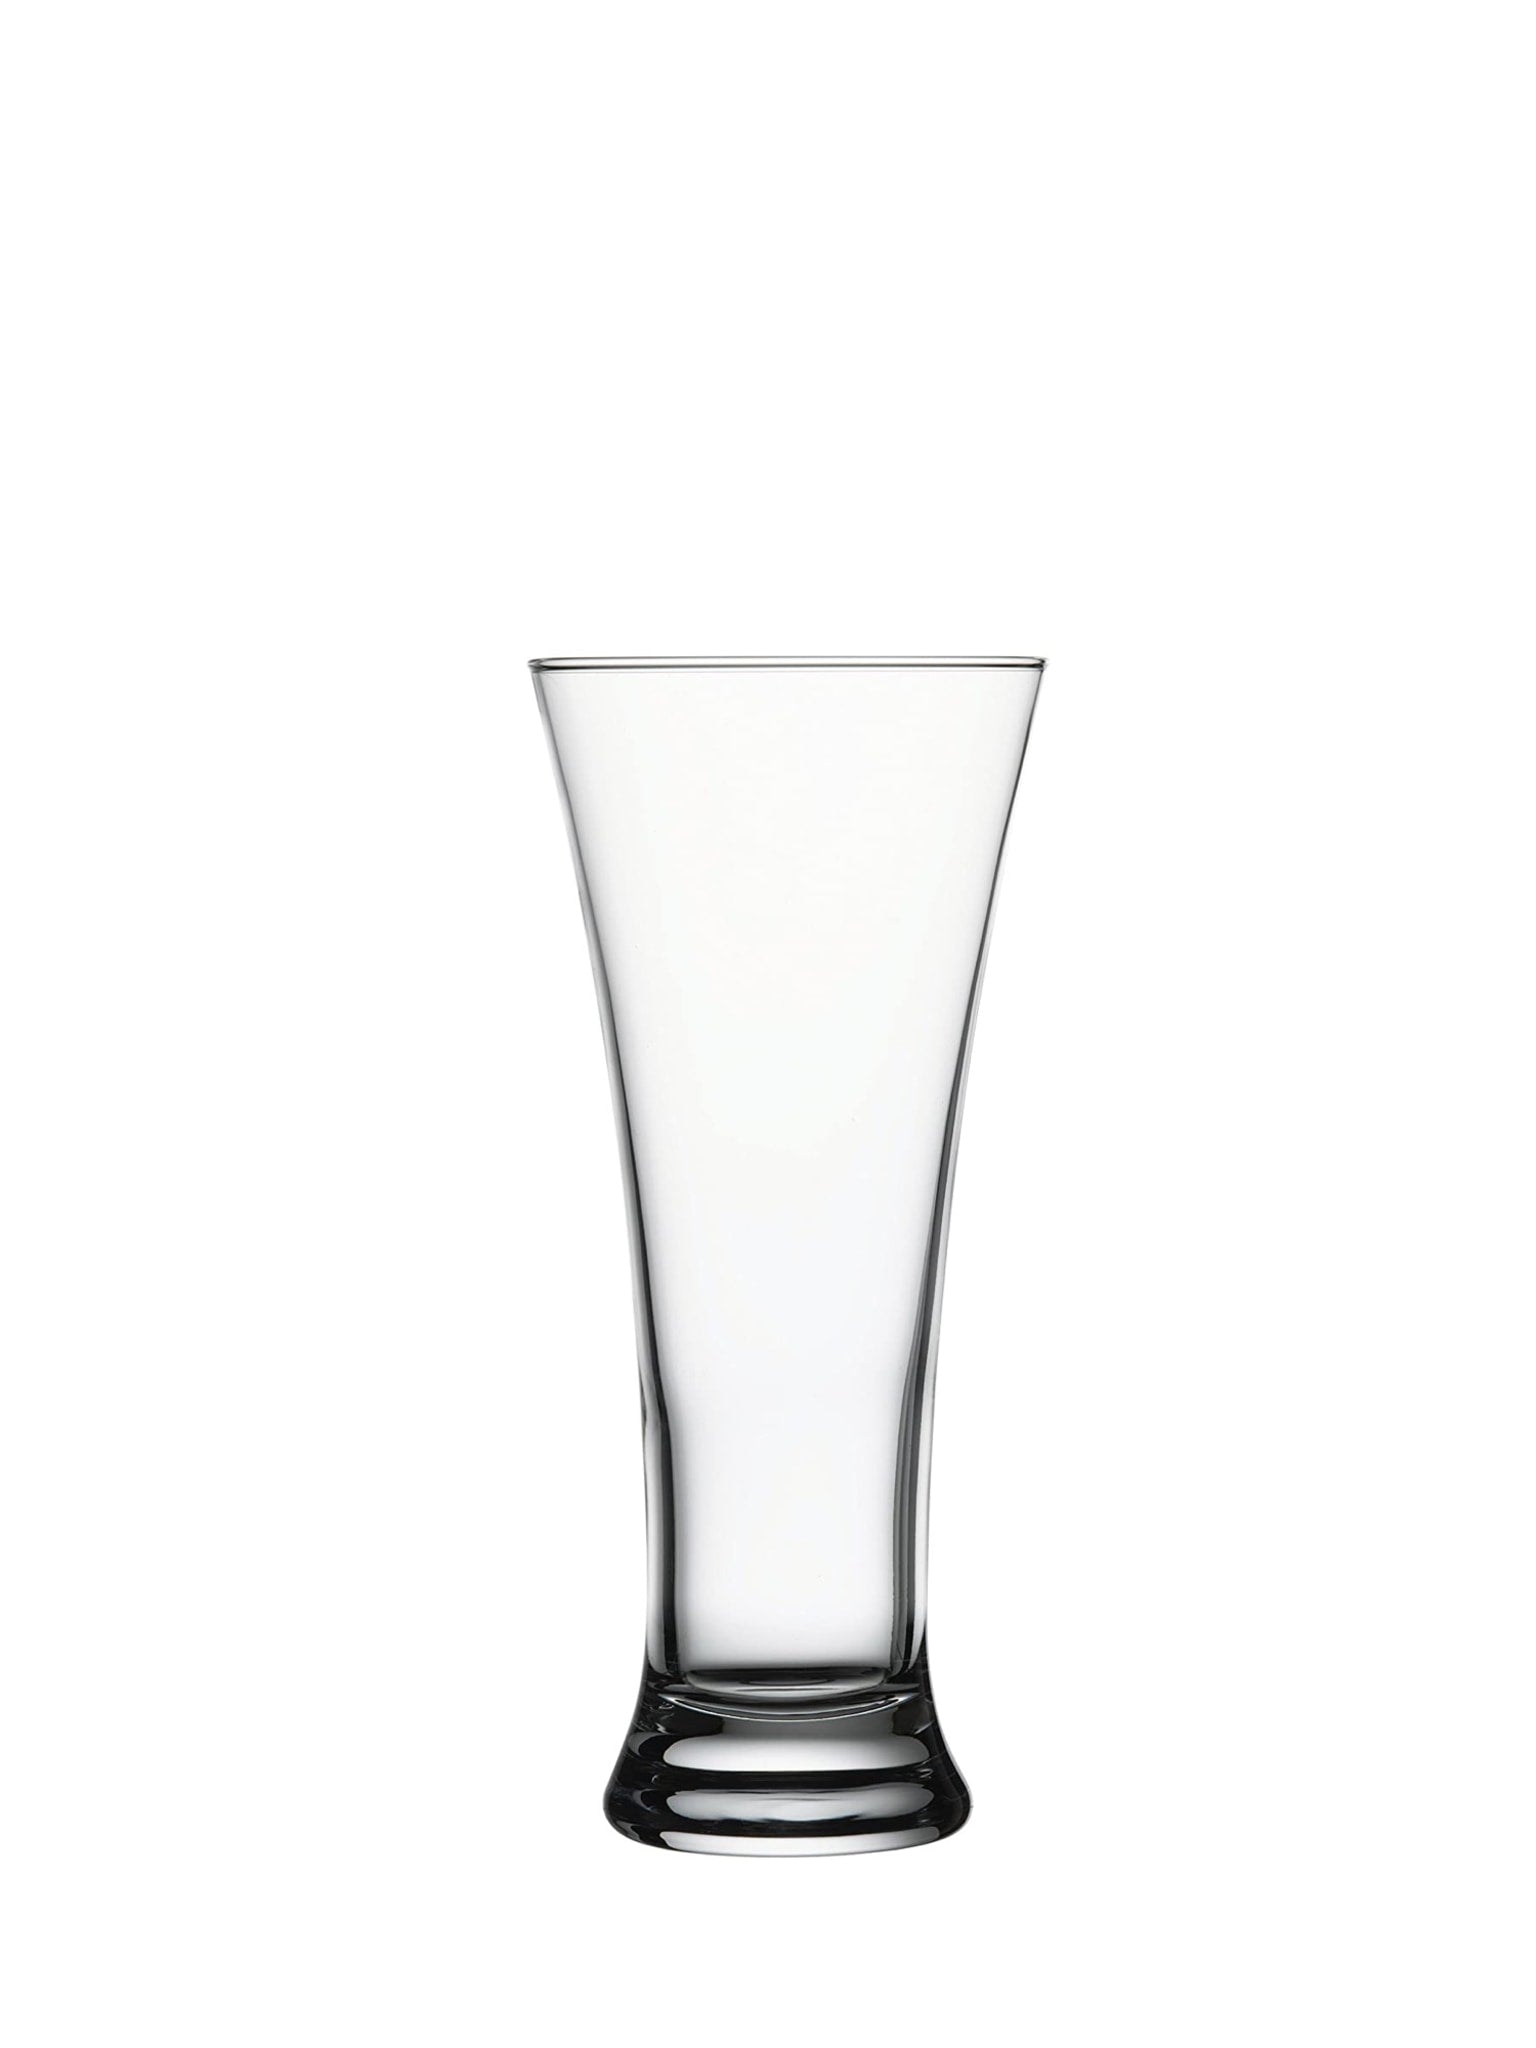 Pub Beer Glas - En klassisk og holdbar ølkrus til servering af din foretrukne dri